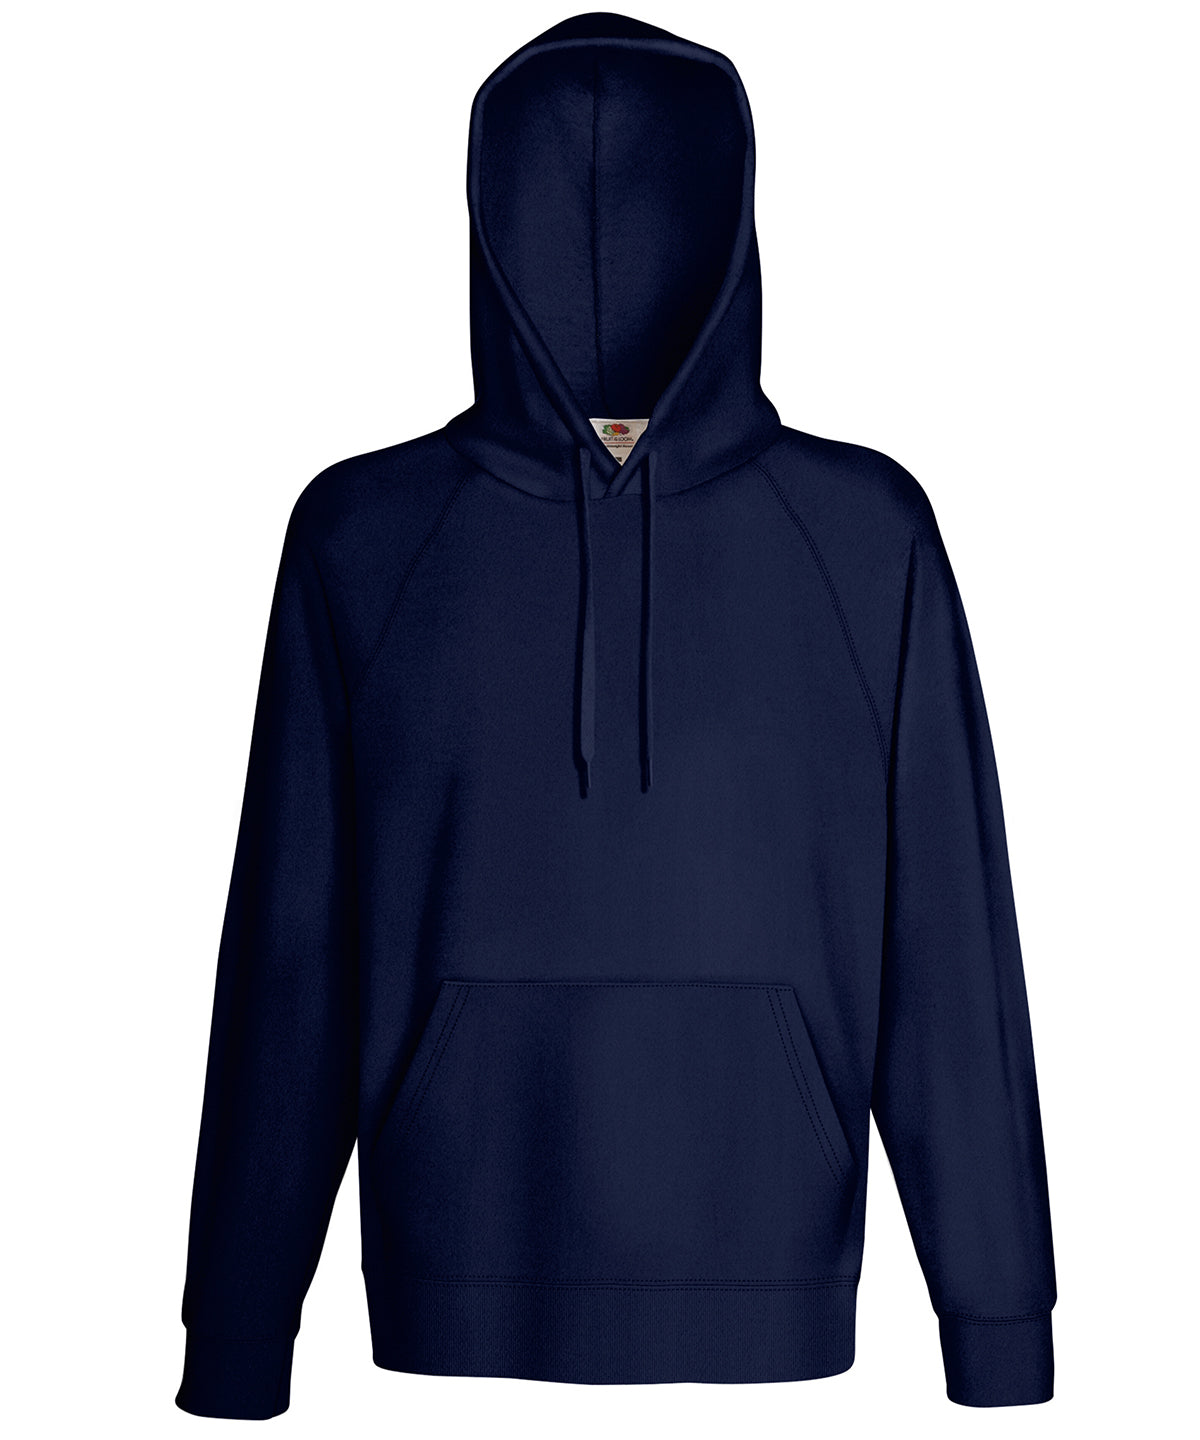 Personalised Hoodies - Mid Blue Fruit of the Loom Lightweight hooded sweatshirt